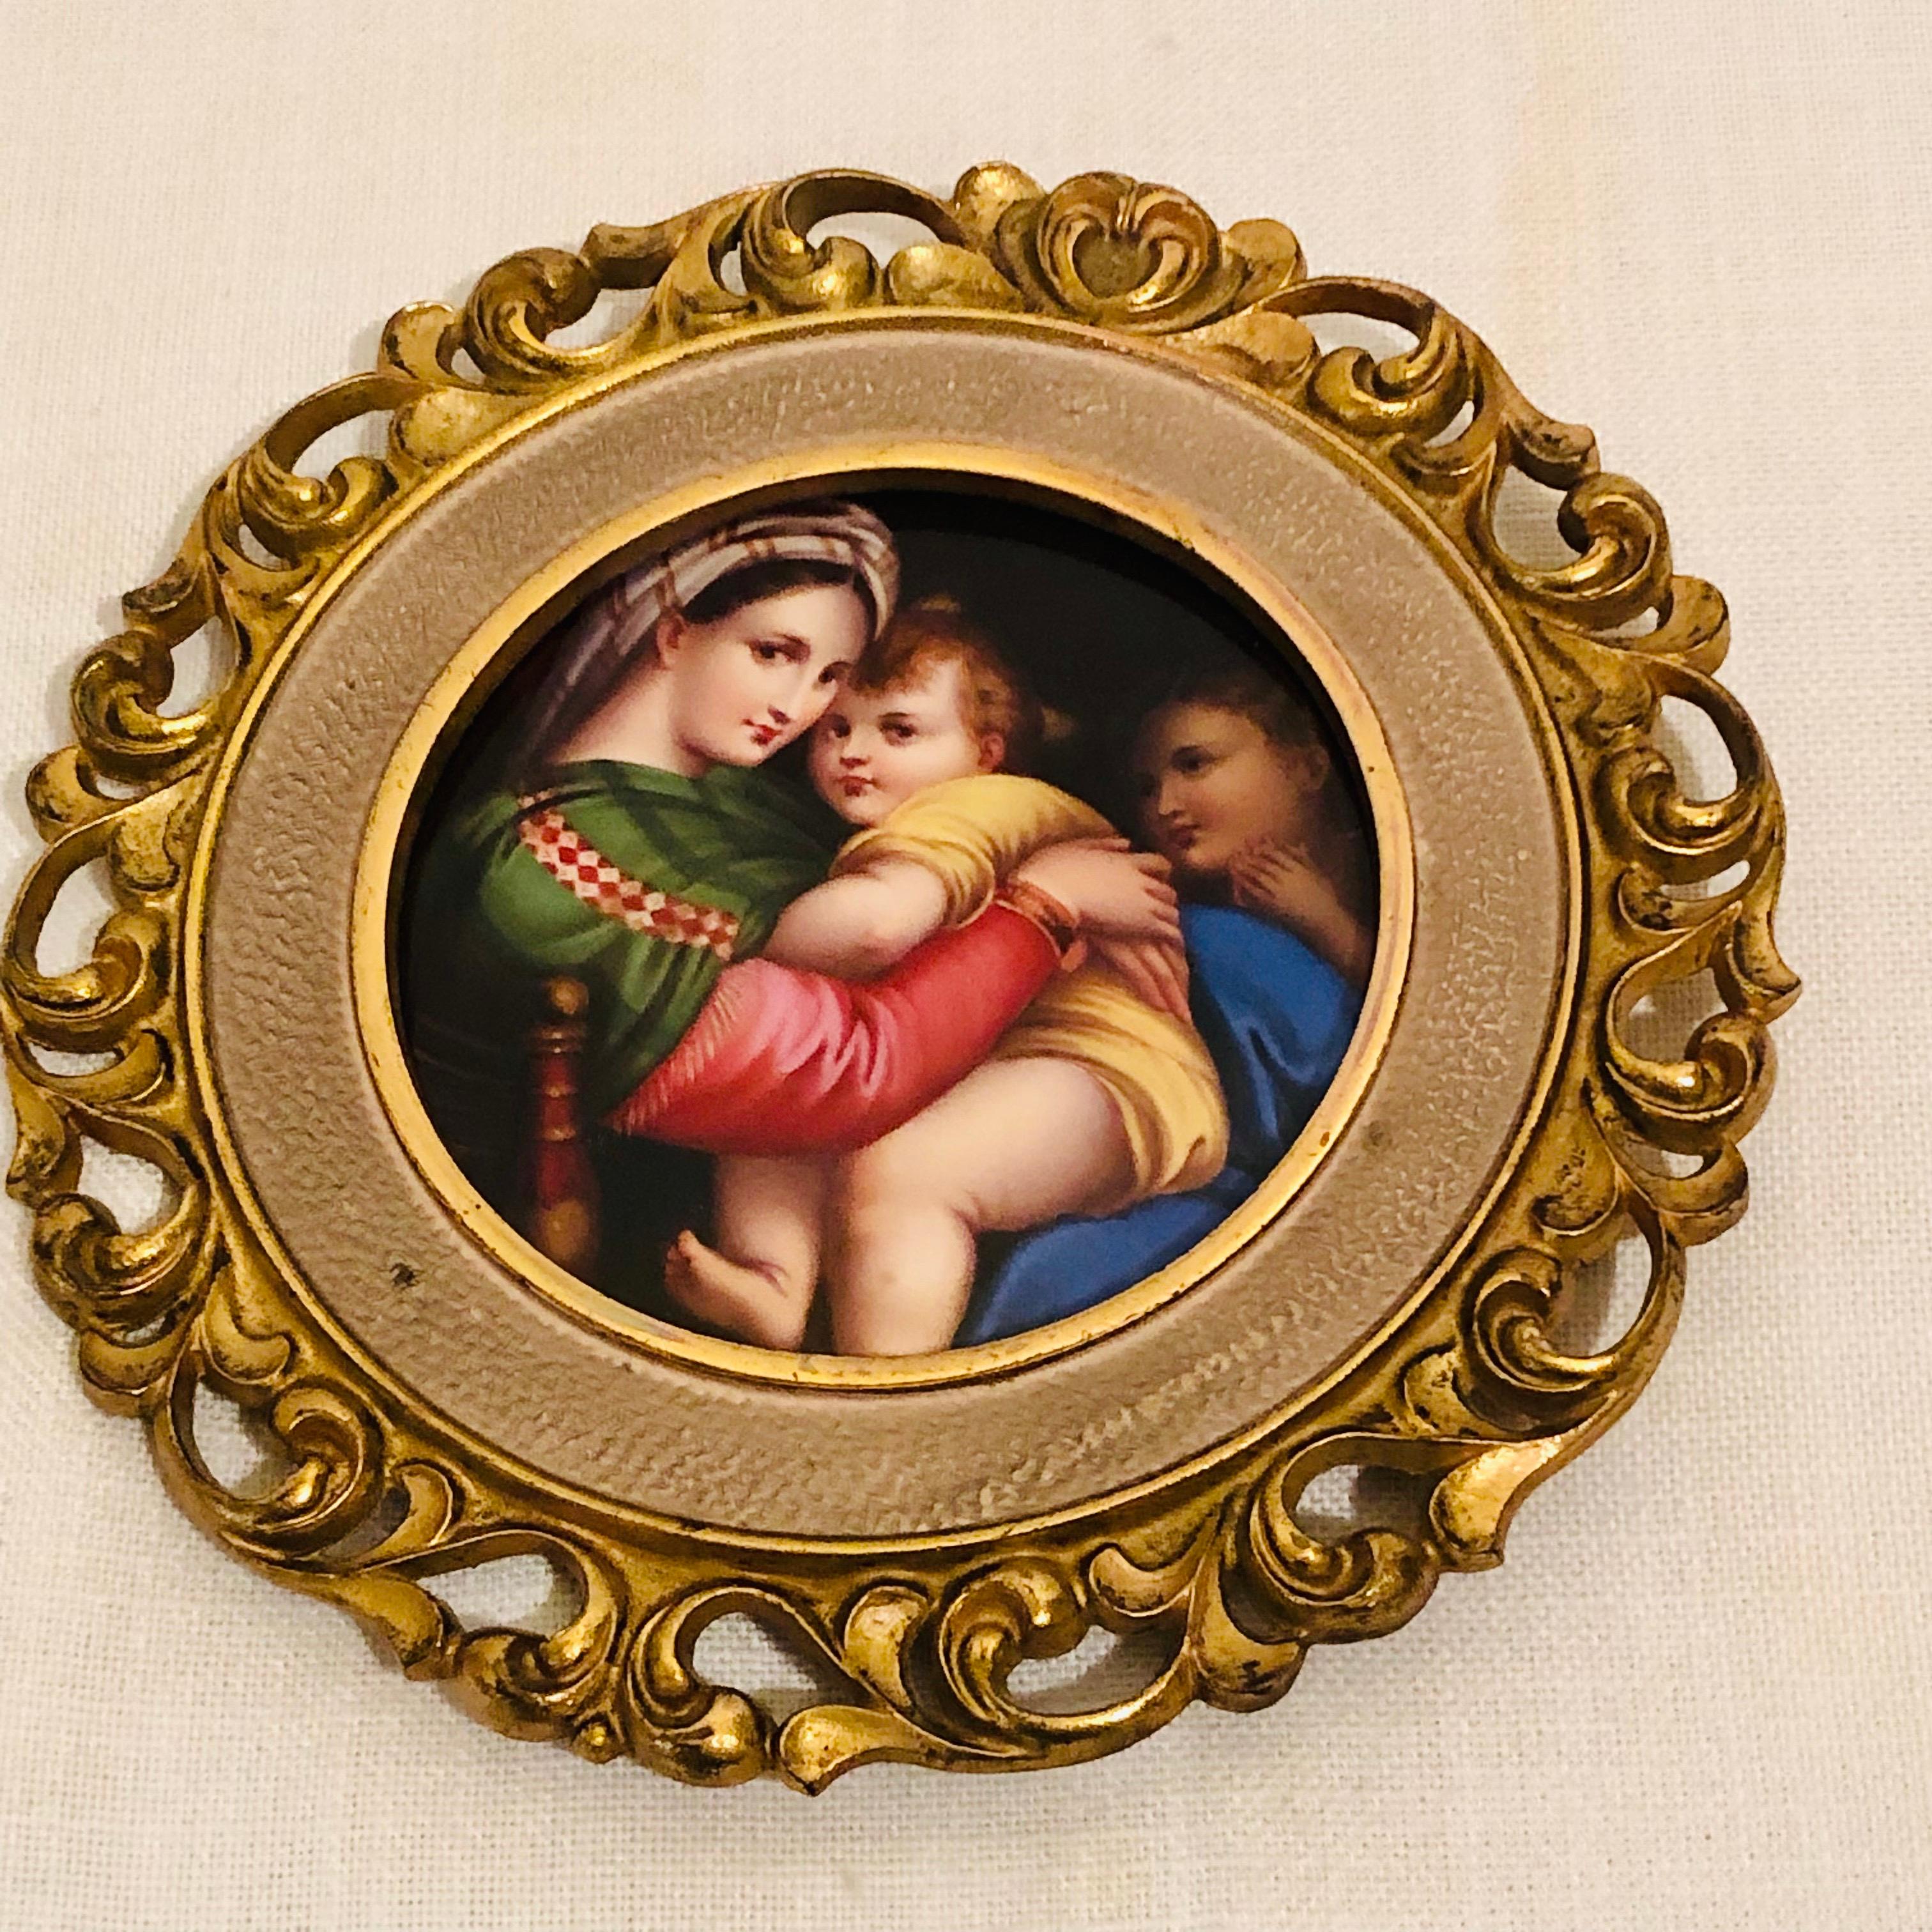 Il s'agit d'une plaque en porcelaine KPM magnifiquement peinte d'après le célèbre tableau de la Madone de la Chaise ou Madone della Sedia de Raphael, qui a été peint à l'origine en 1513-1514. De nombreuses plaques KPM, magnifiques et recherchées,